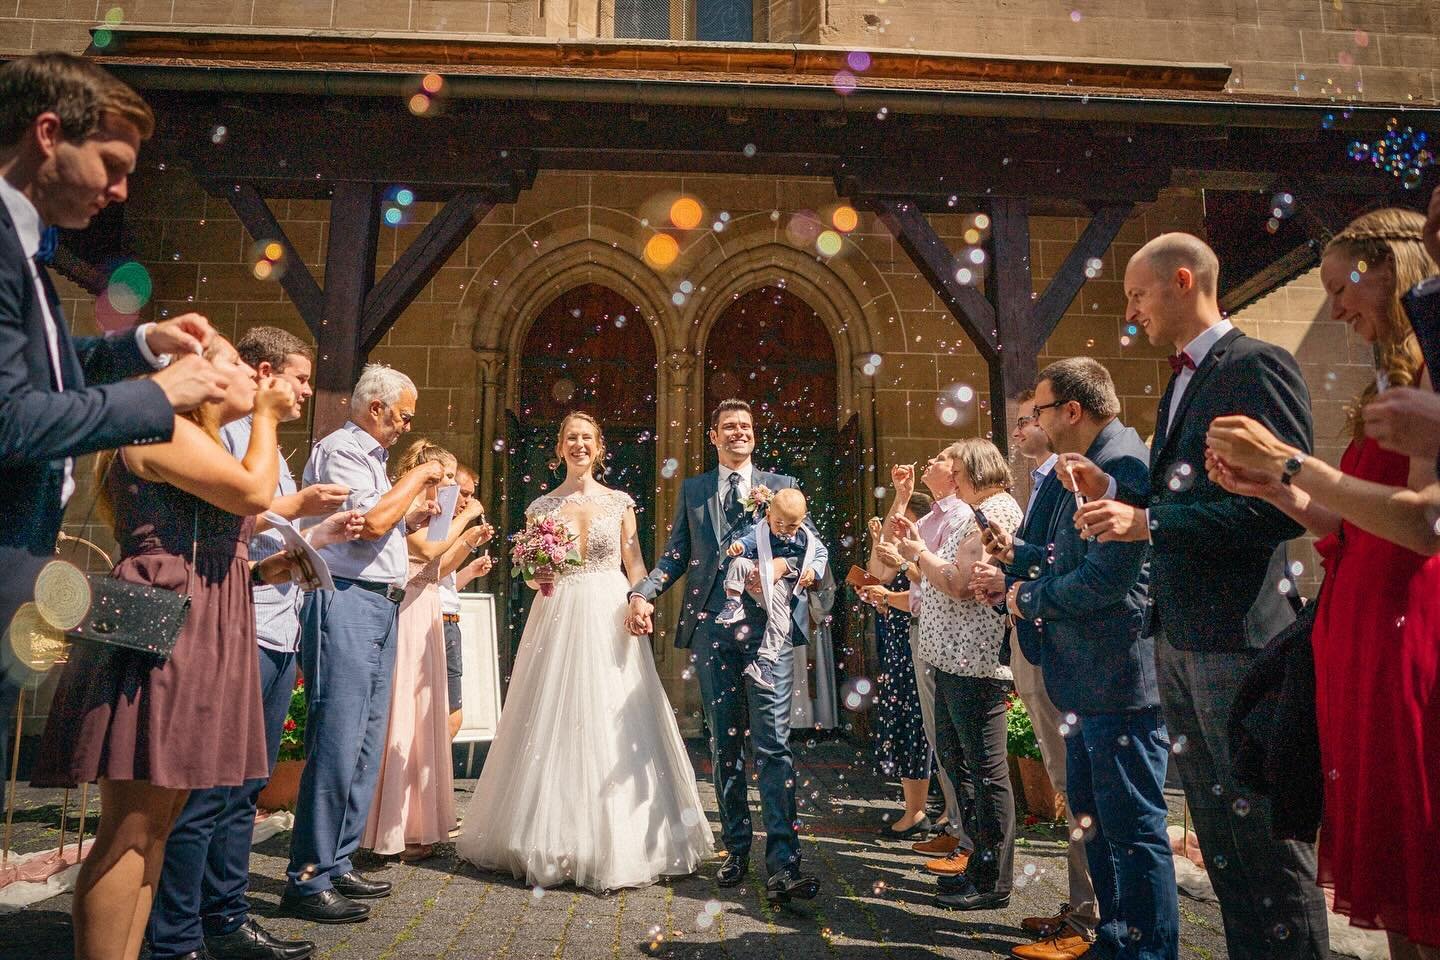 Hochzeitsfoto des Tages #hochzeitsfotos #hochzeitsfotografie #brautpaar #hochzeitsinspiration #hochzeitswahn #hochzeitsfotoshooting #brideandgroom